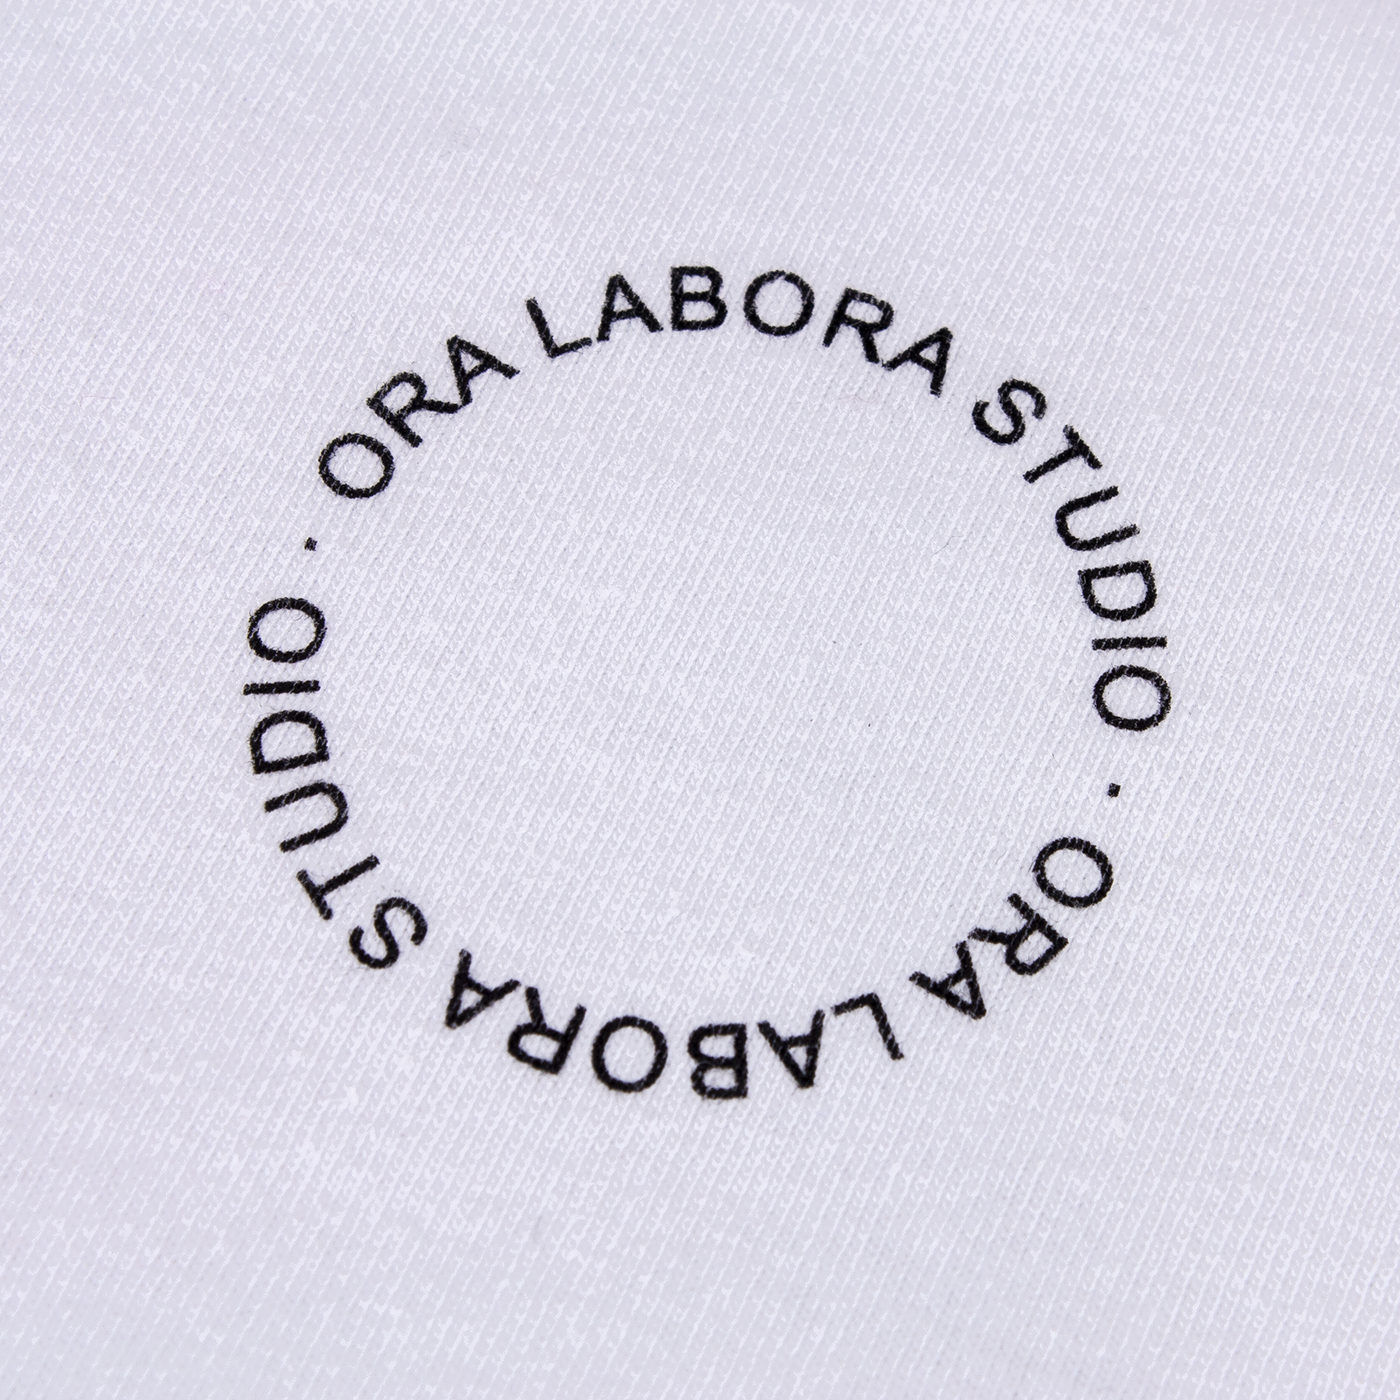 Camiseta-OraLaboraStudio-detalle-cuadrada-web